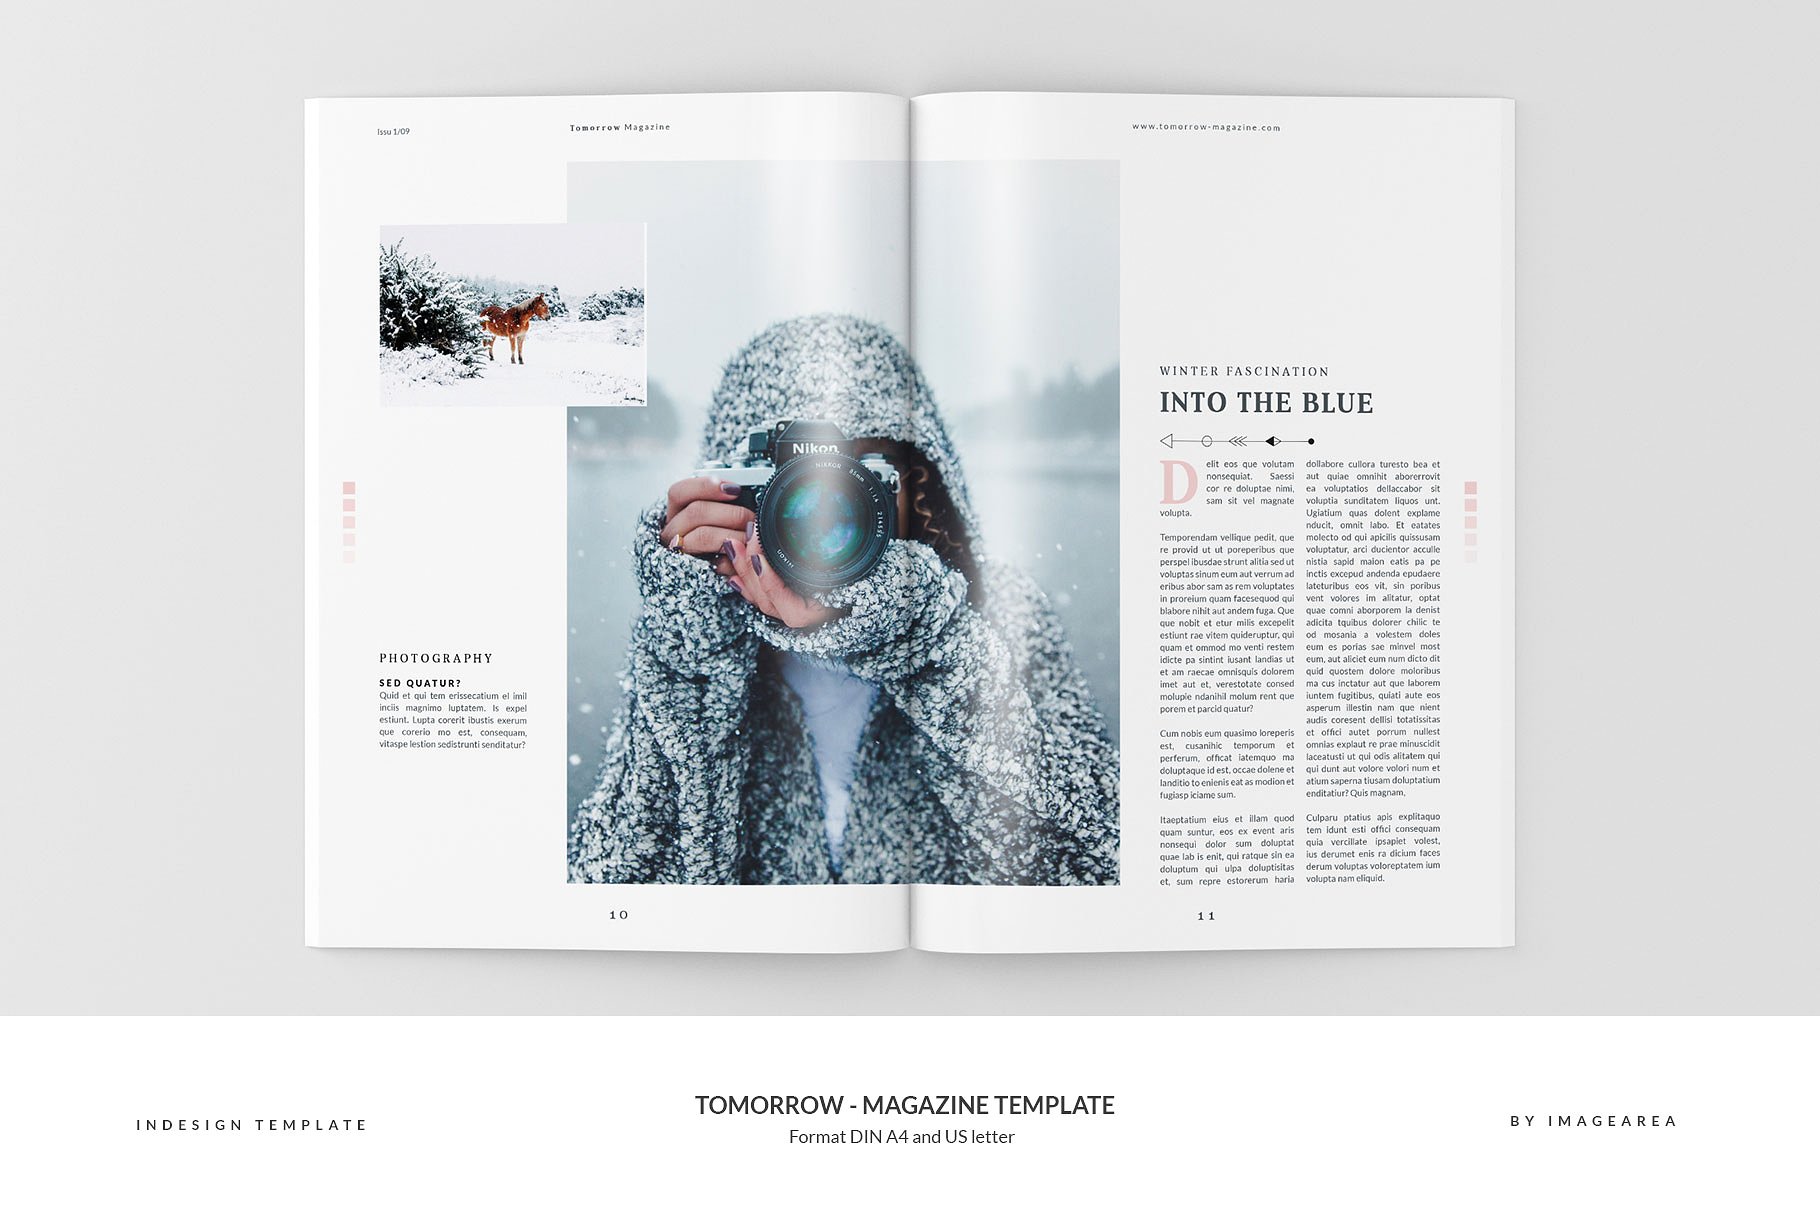 图文并茂排版优秀的专业杂志模板 Tomorrow – Magazine Template插图(6)